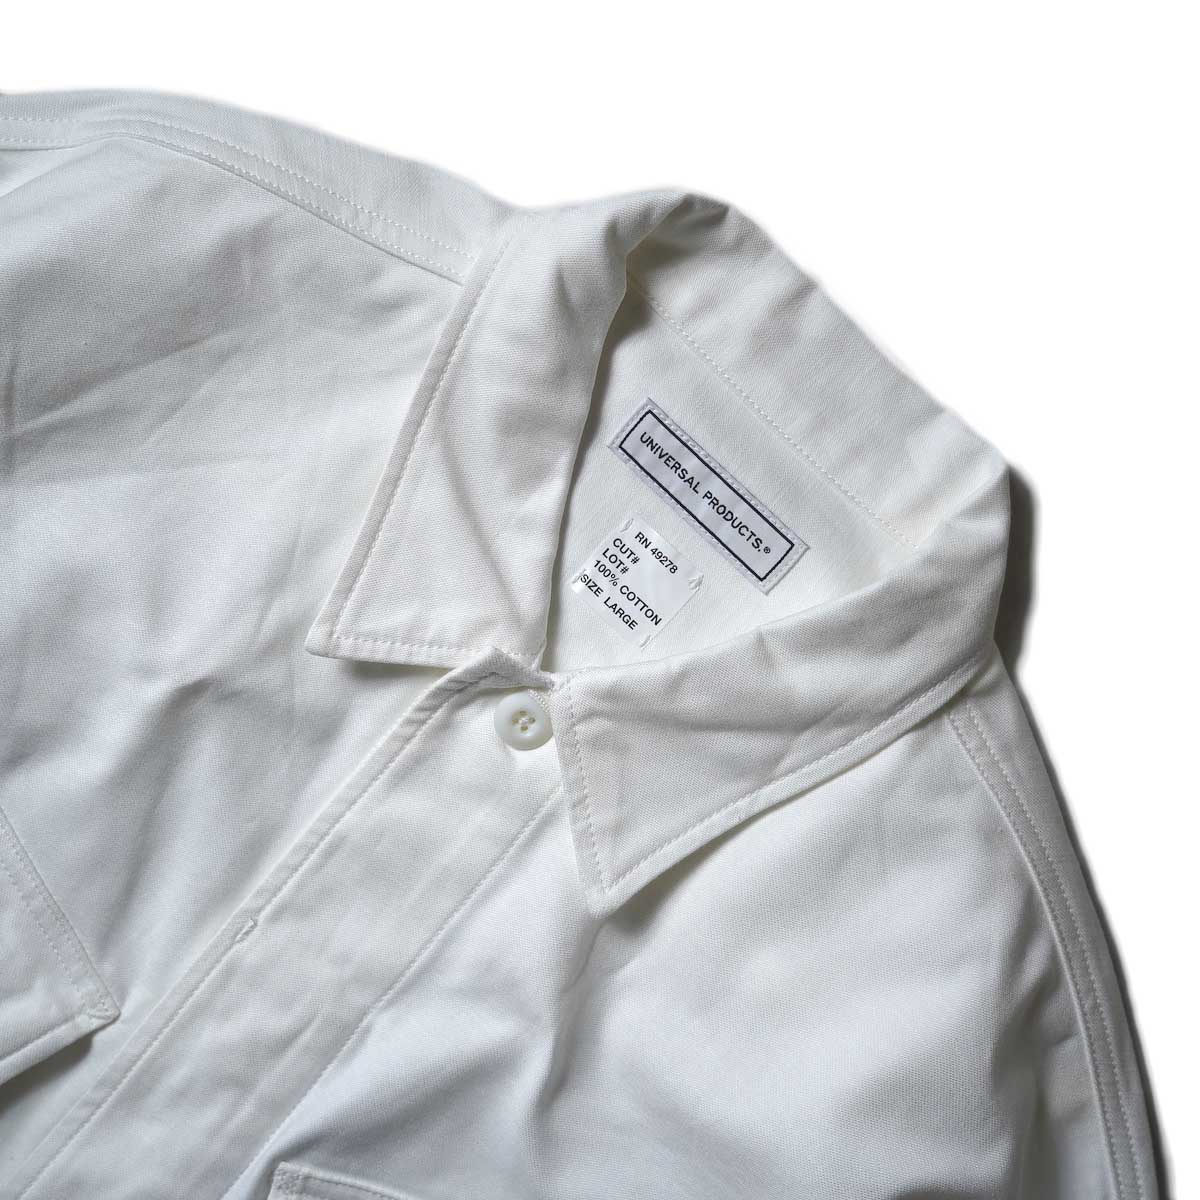 UNIVERSAL PRODUCTS / Gung Ho Fatigue Jacket (Ivory)ネック